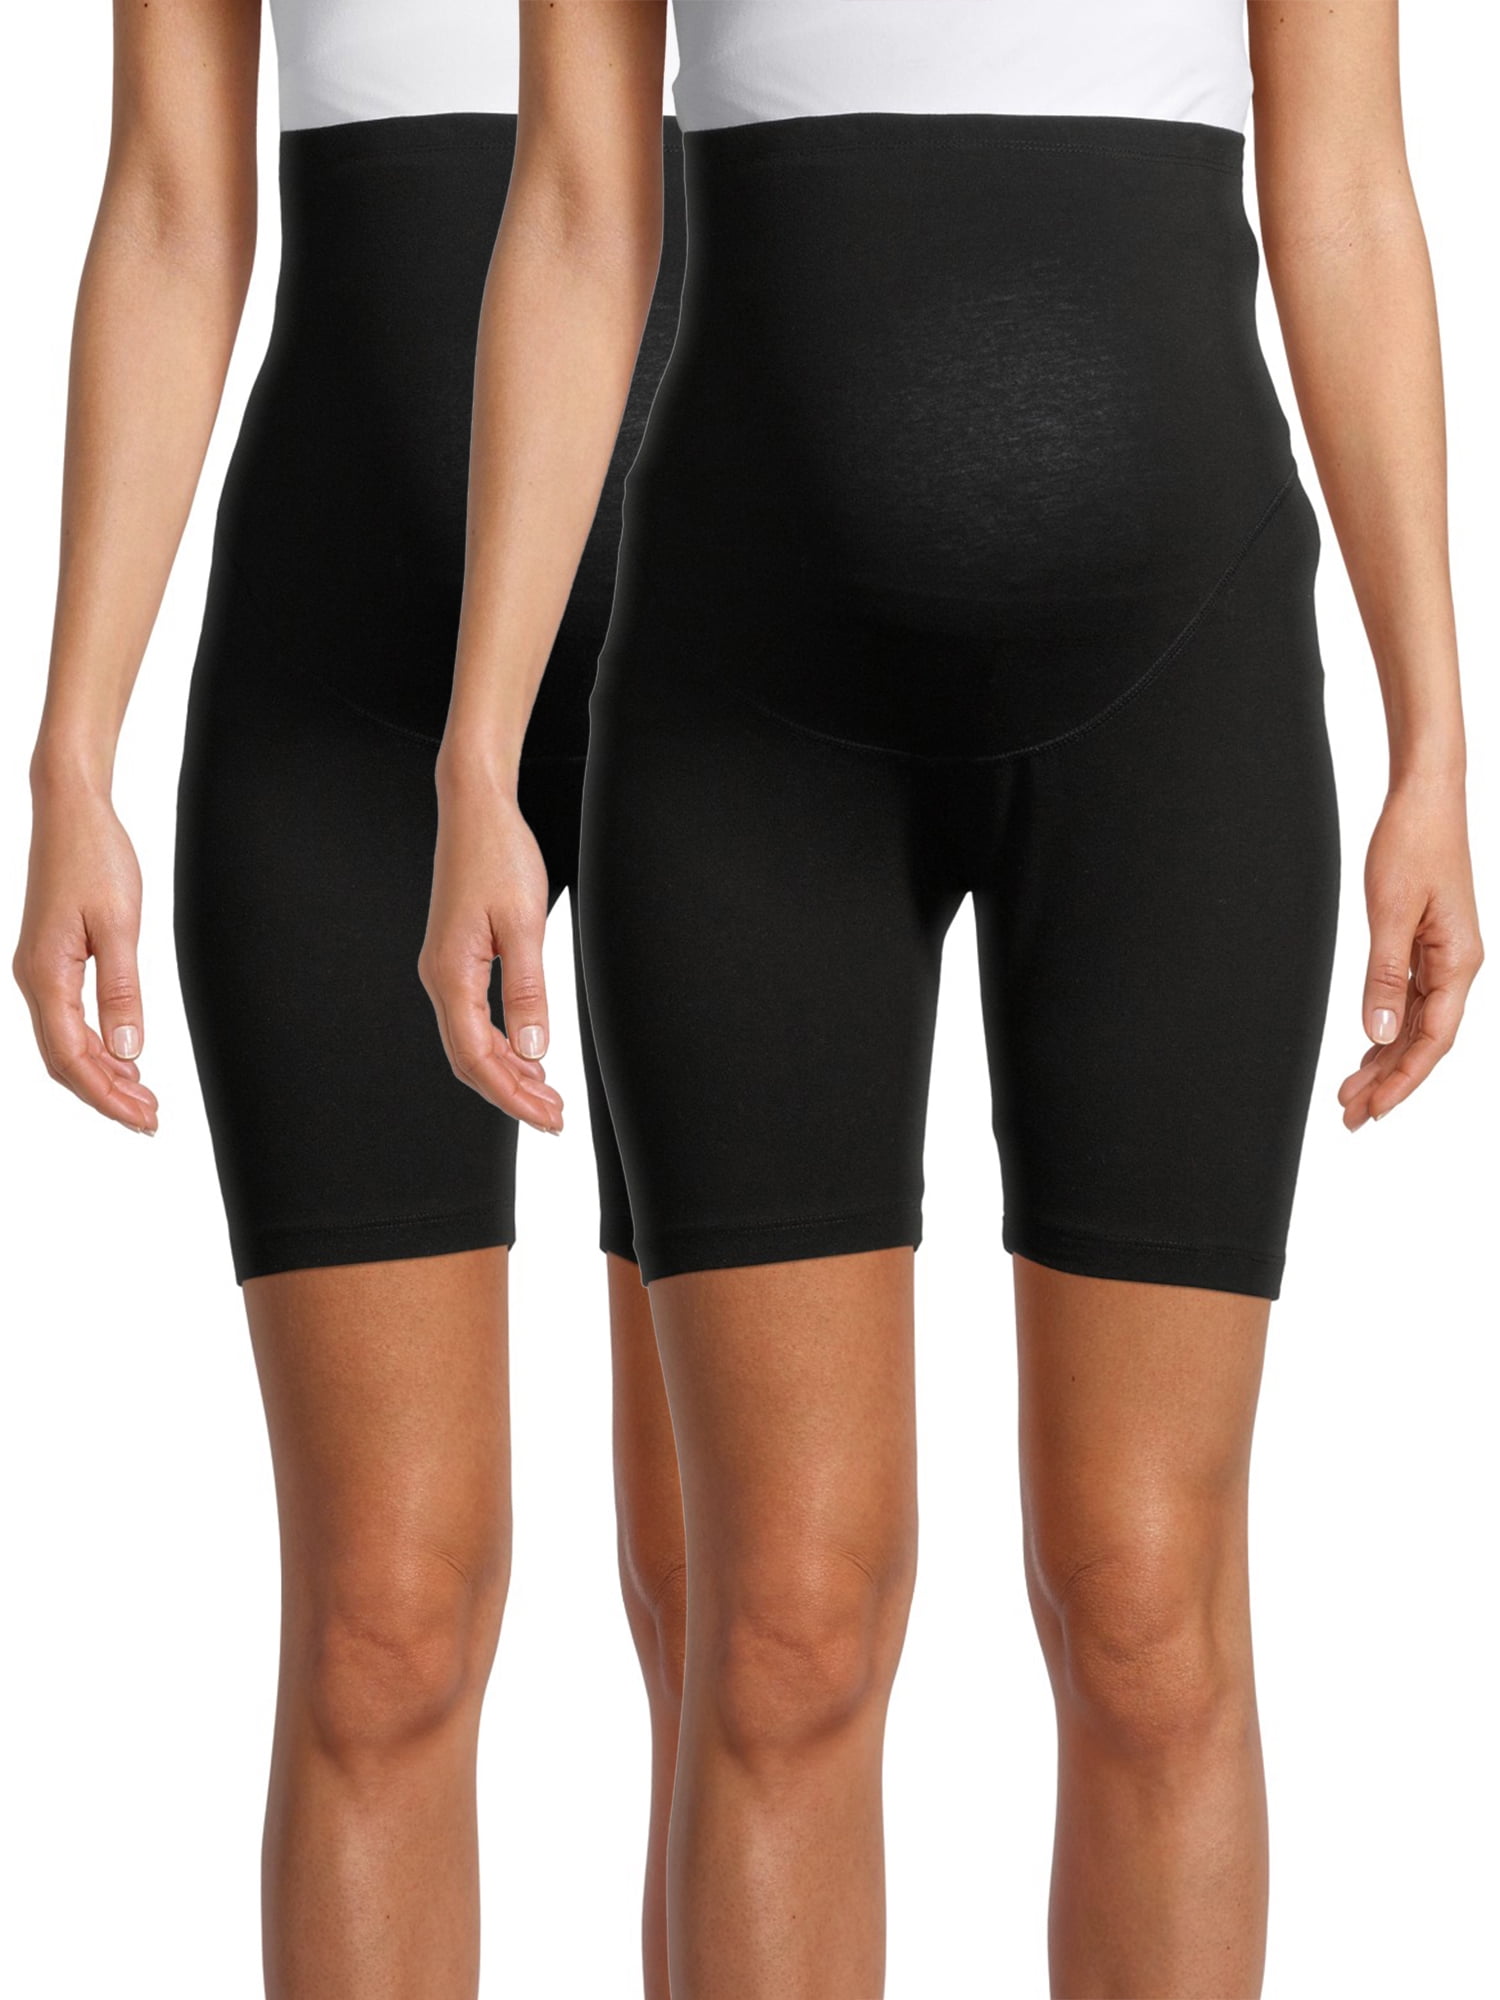 PETITE Maternity Biker Shorts – Ruuji